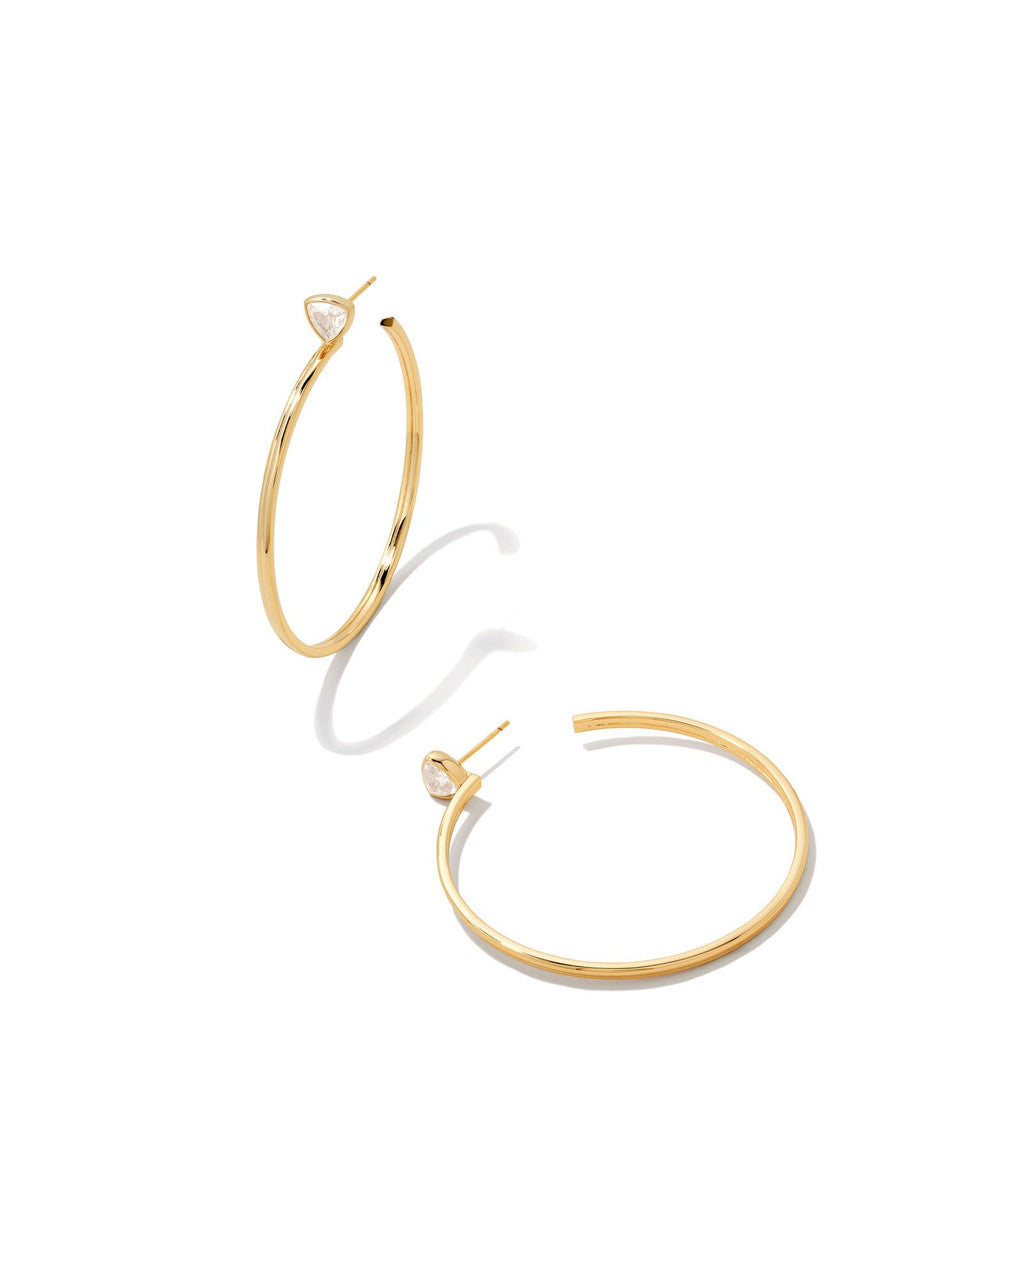 Arden Hoops Earrings in Gold White Crystal